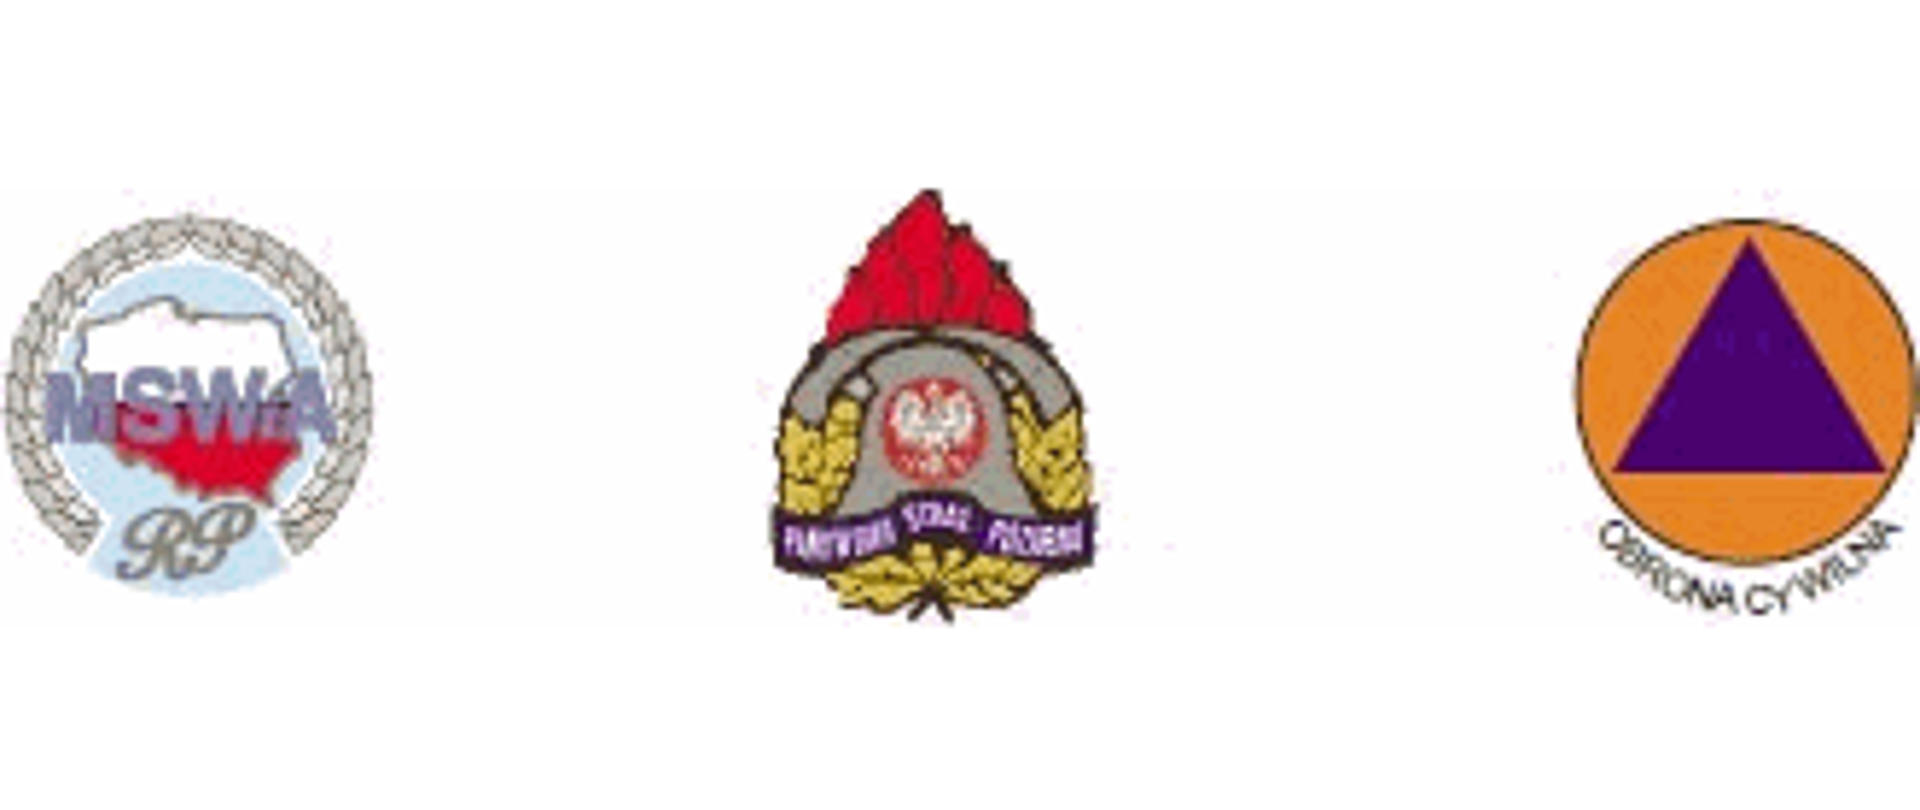 Loga: MSWiA, Państwowej Straży Pożarnej i Obrony Cywilnej